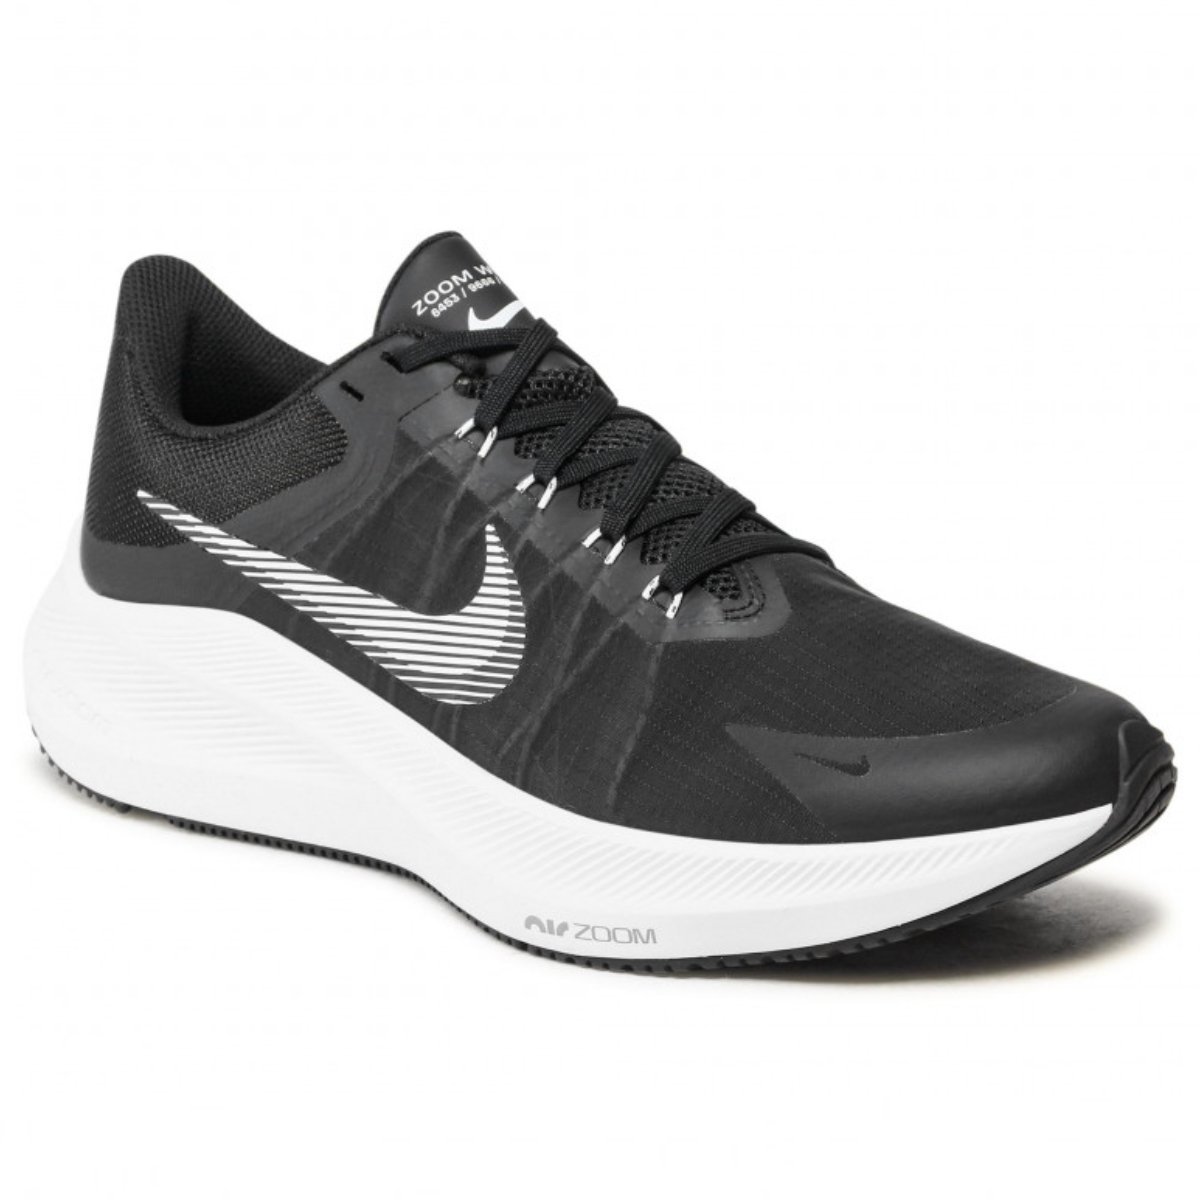 Topánky Nike Zoom Winflo 8 M - čierna/biela